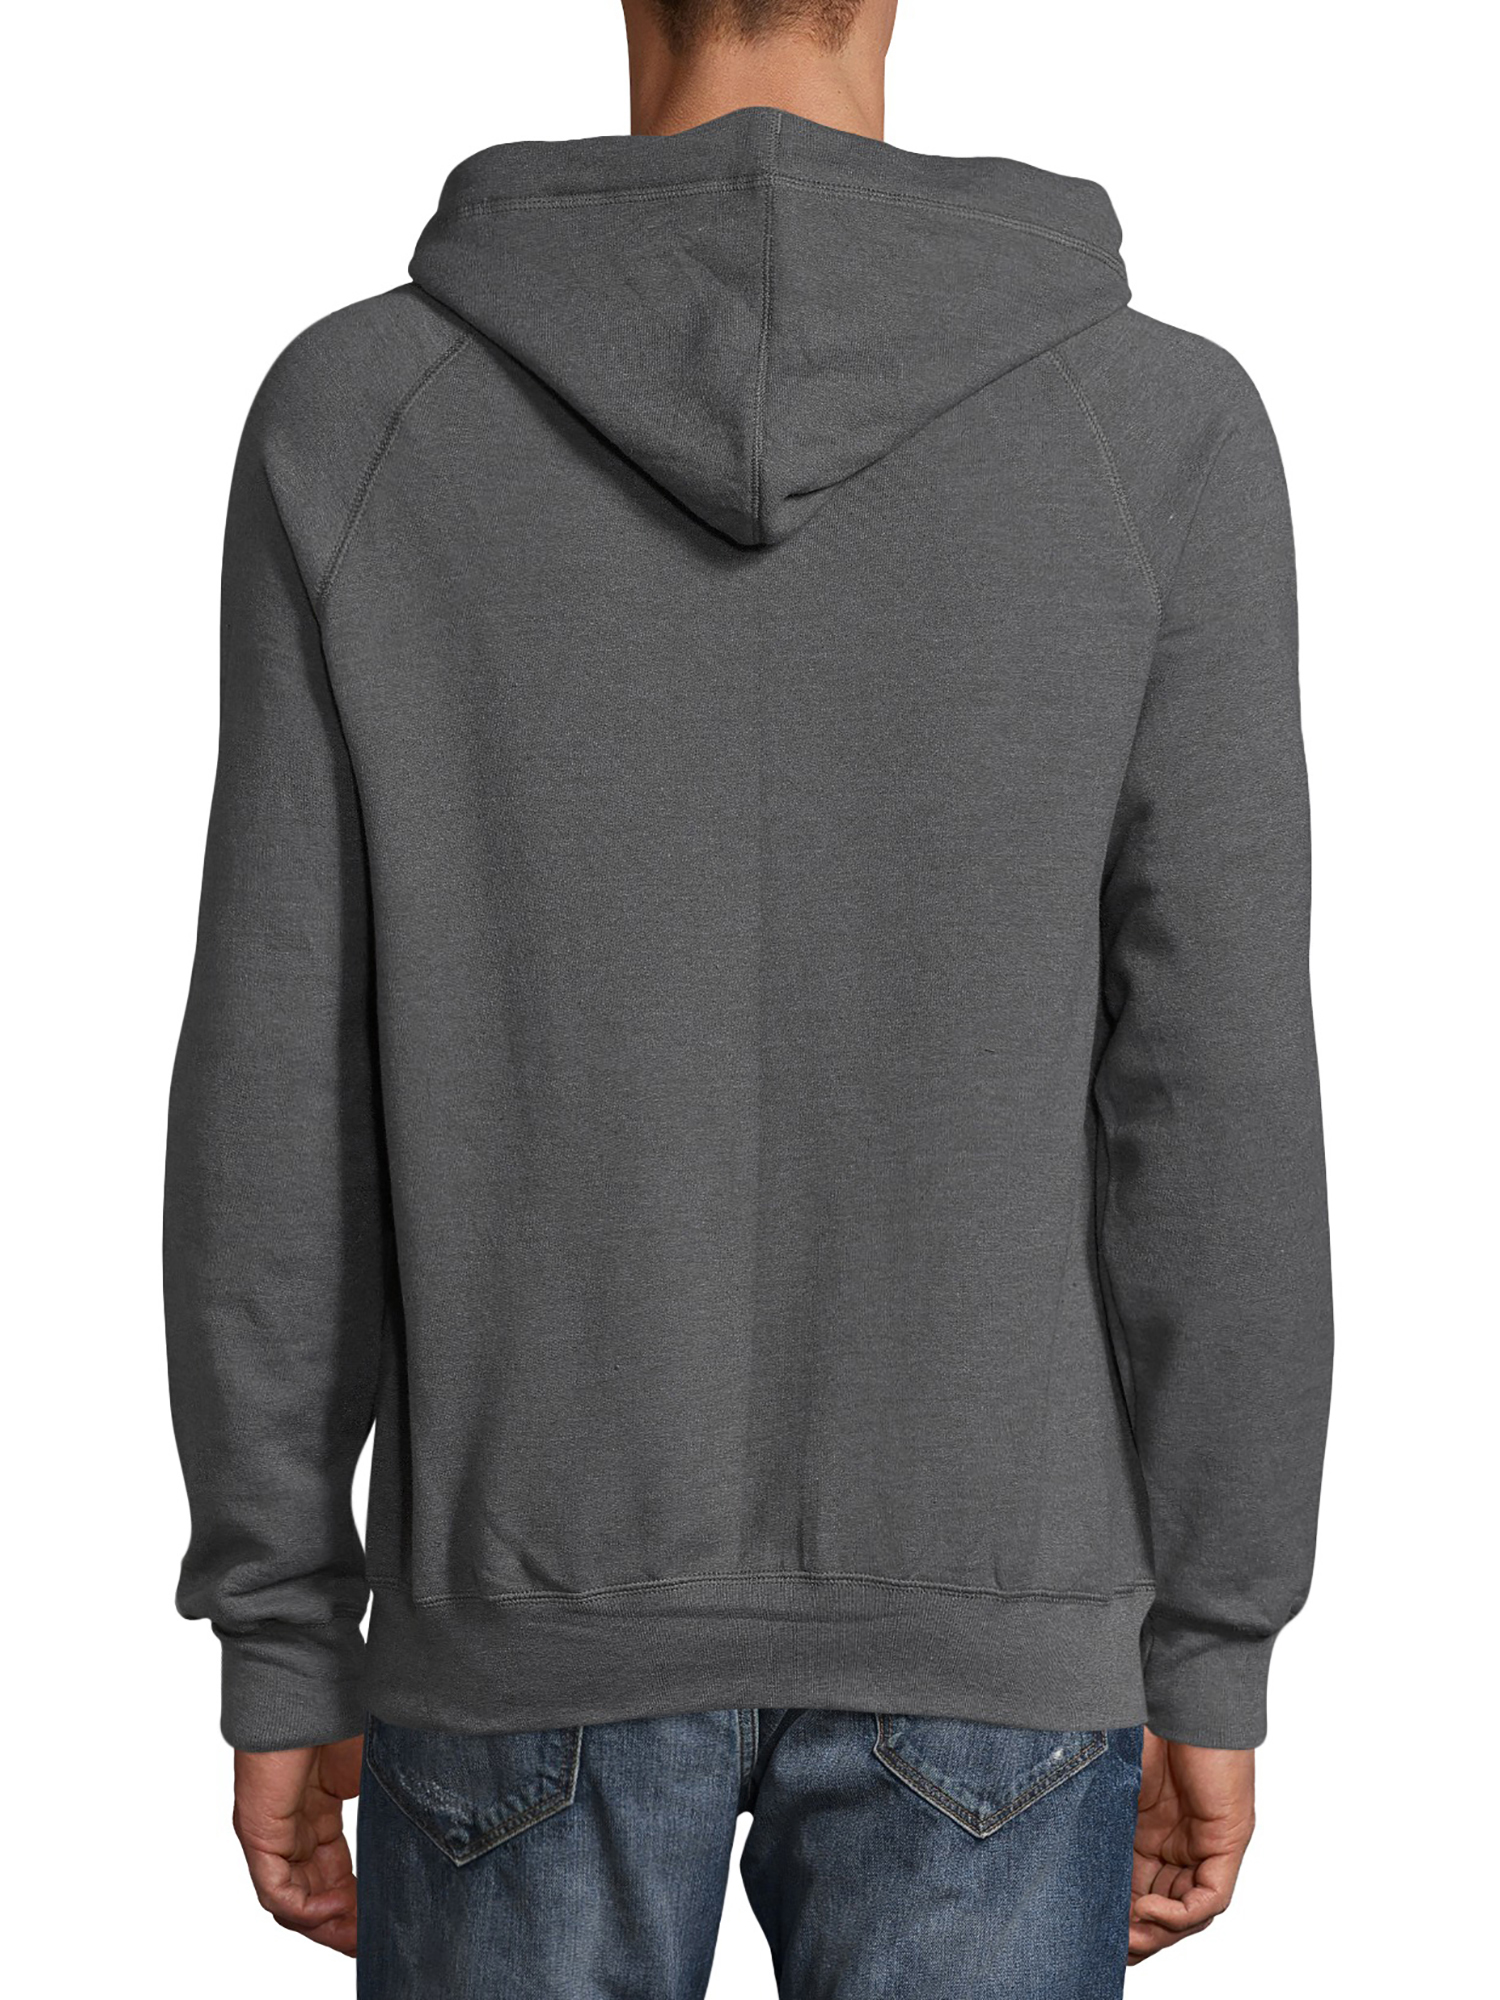 Hanes Men's Nano Premium Soft Lightweight Fleece Full Zip Hood - image 2 of 5